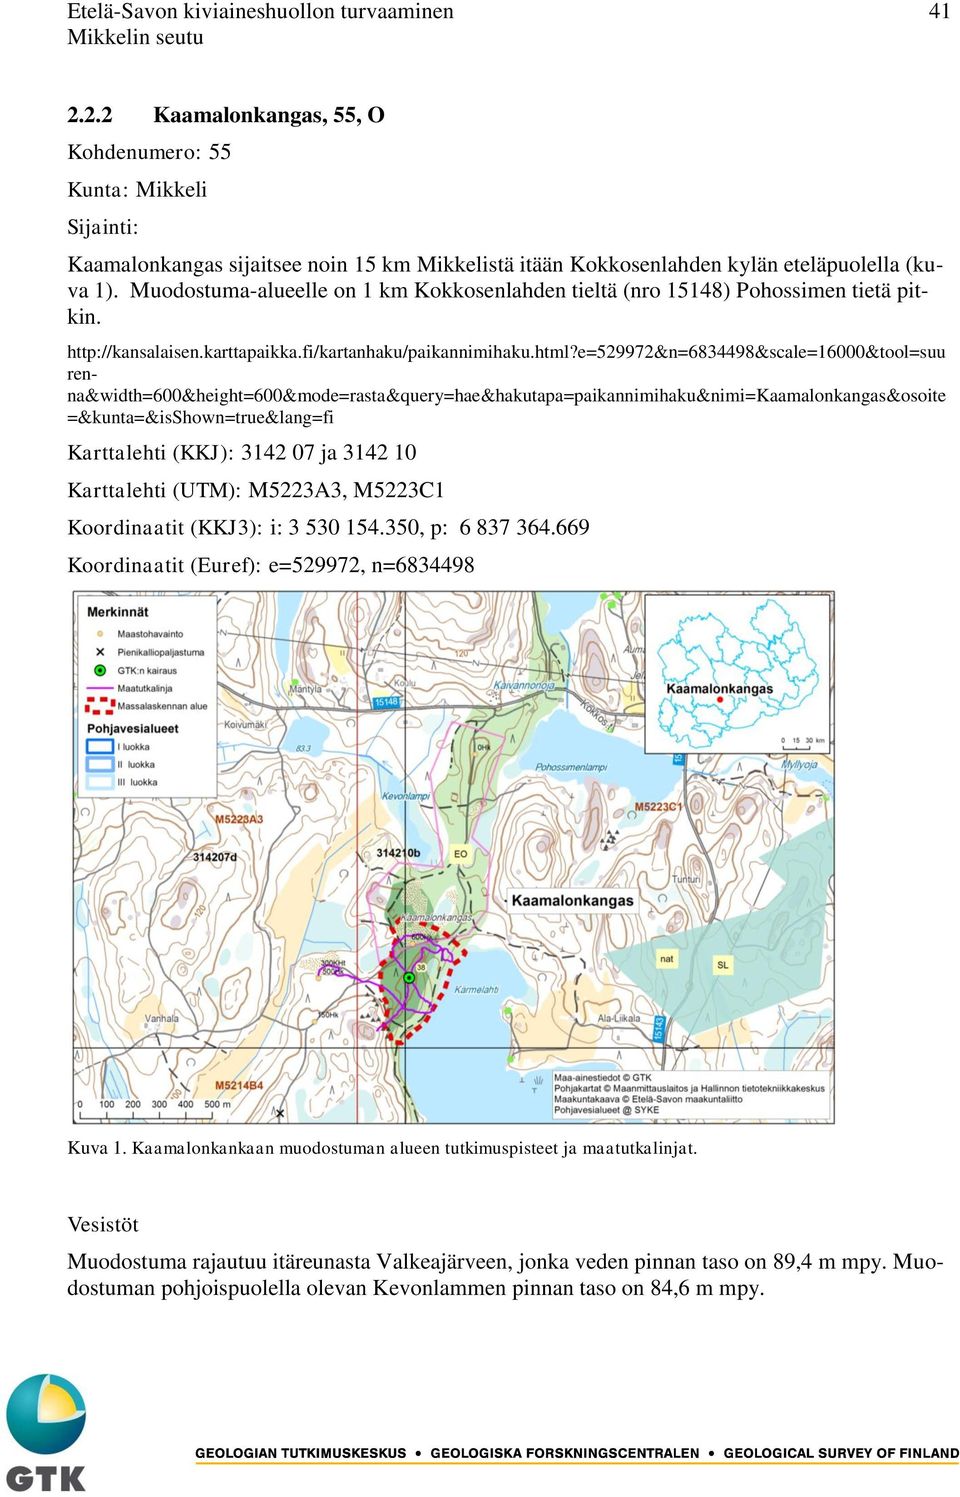 Muodostuma-alueelle on 1 km Kokkosenlahden tieltä (nro 15148) Pohossimen tietä pitkin. http://kansalaisen.karttapaikka.fi/kartanhaku/paikannimihaku.html?